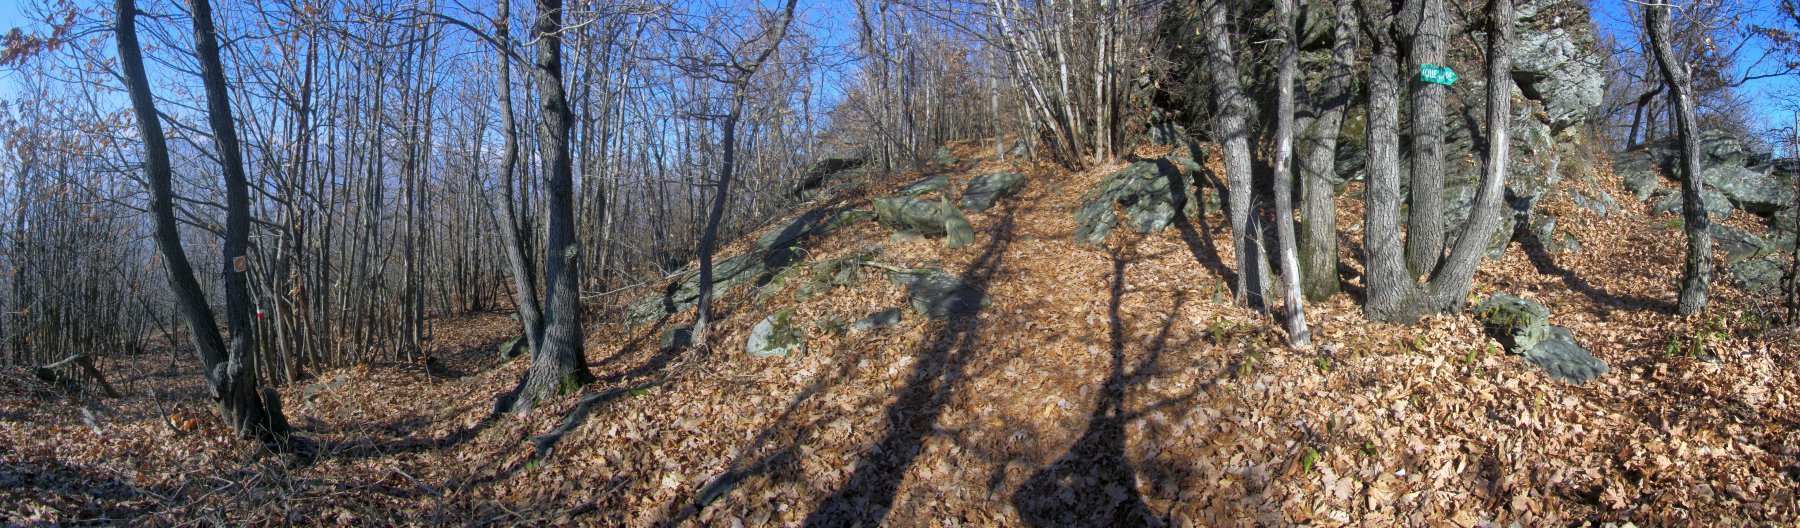 il sentiero che taglia per il passo è ostruito da due alberi caduti